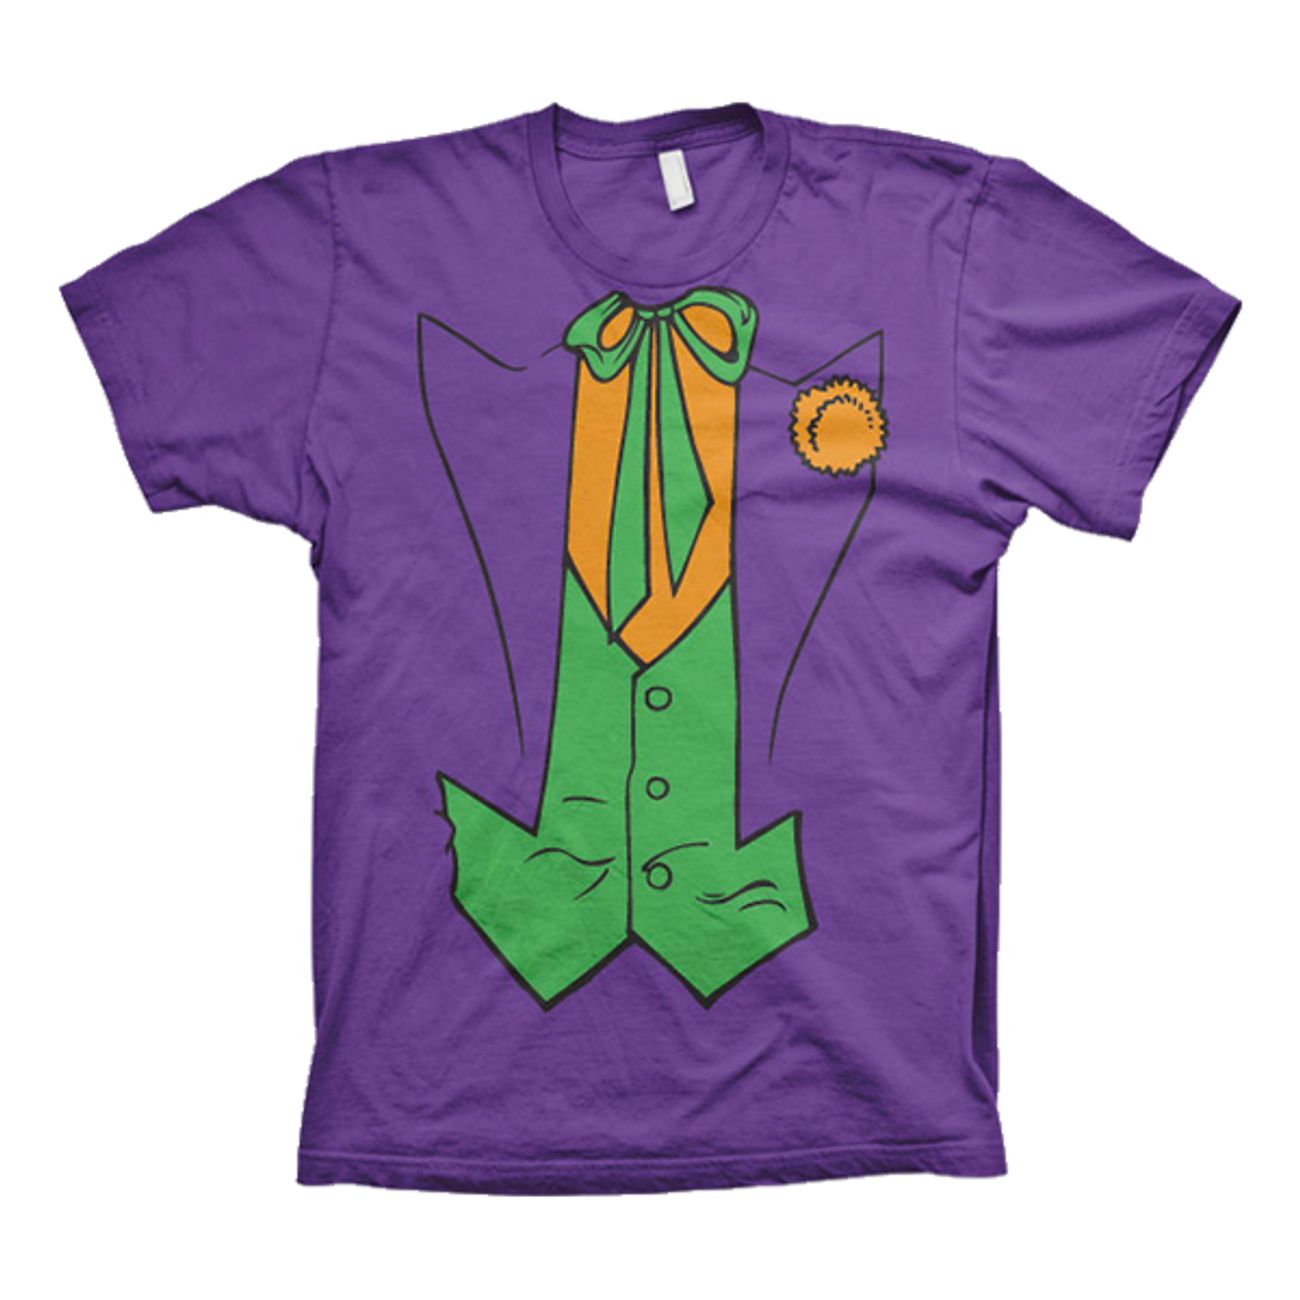 the-joker-t-shirt-74865-1